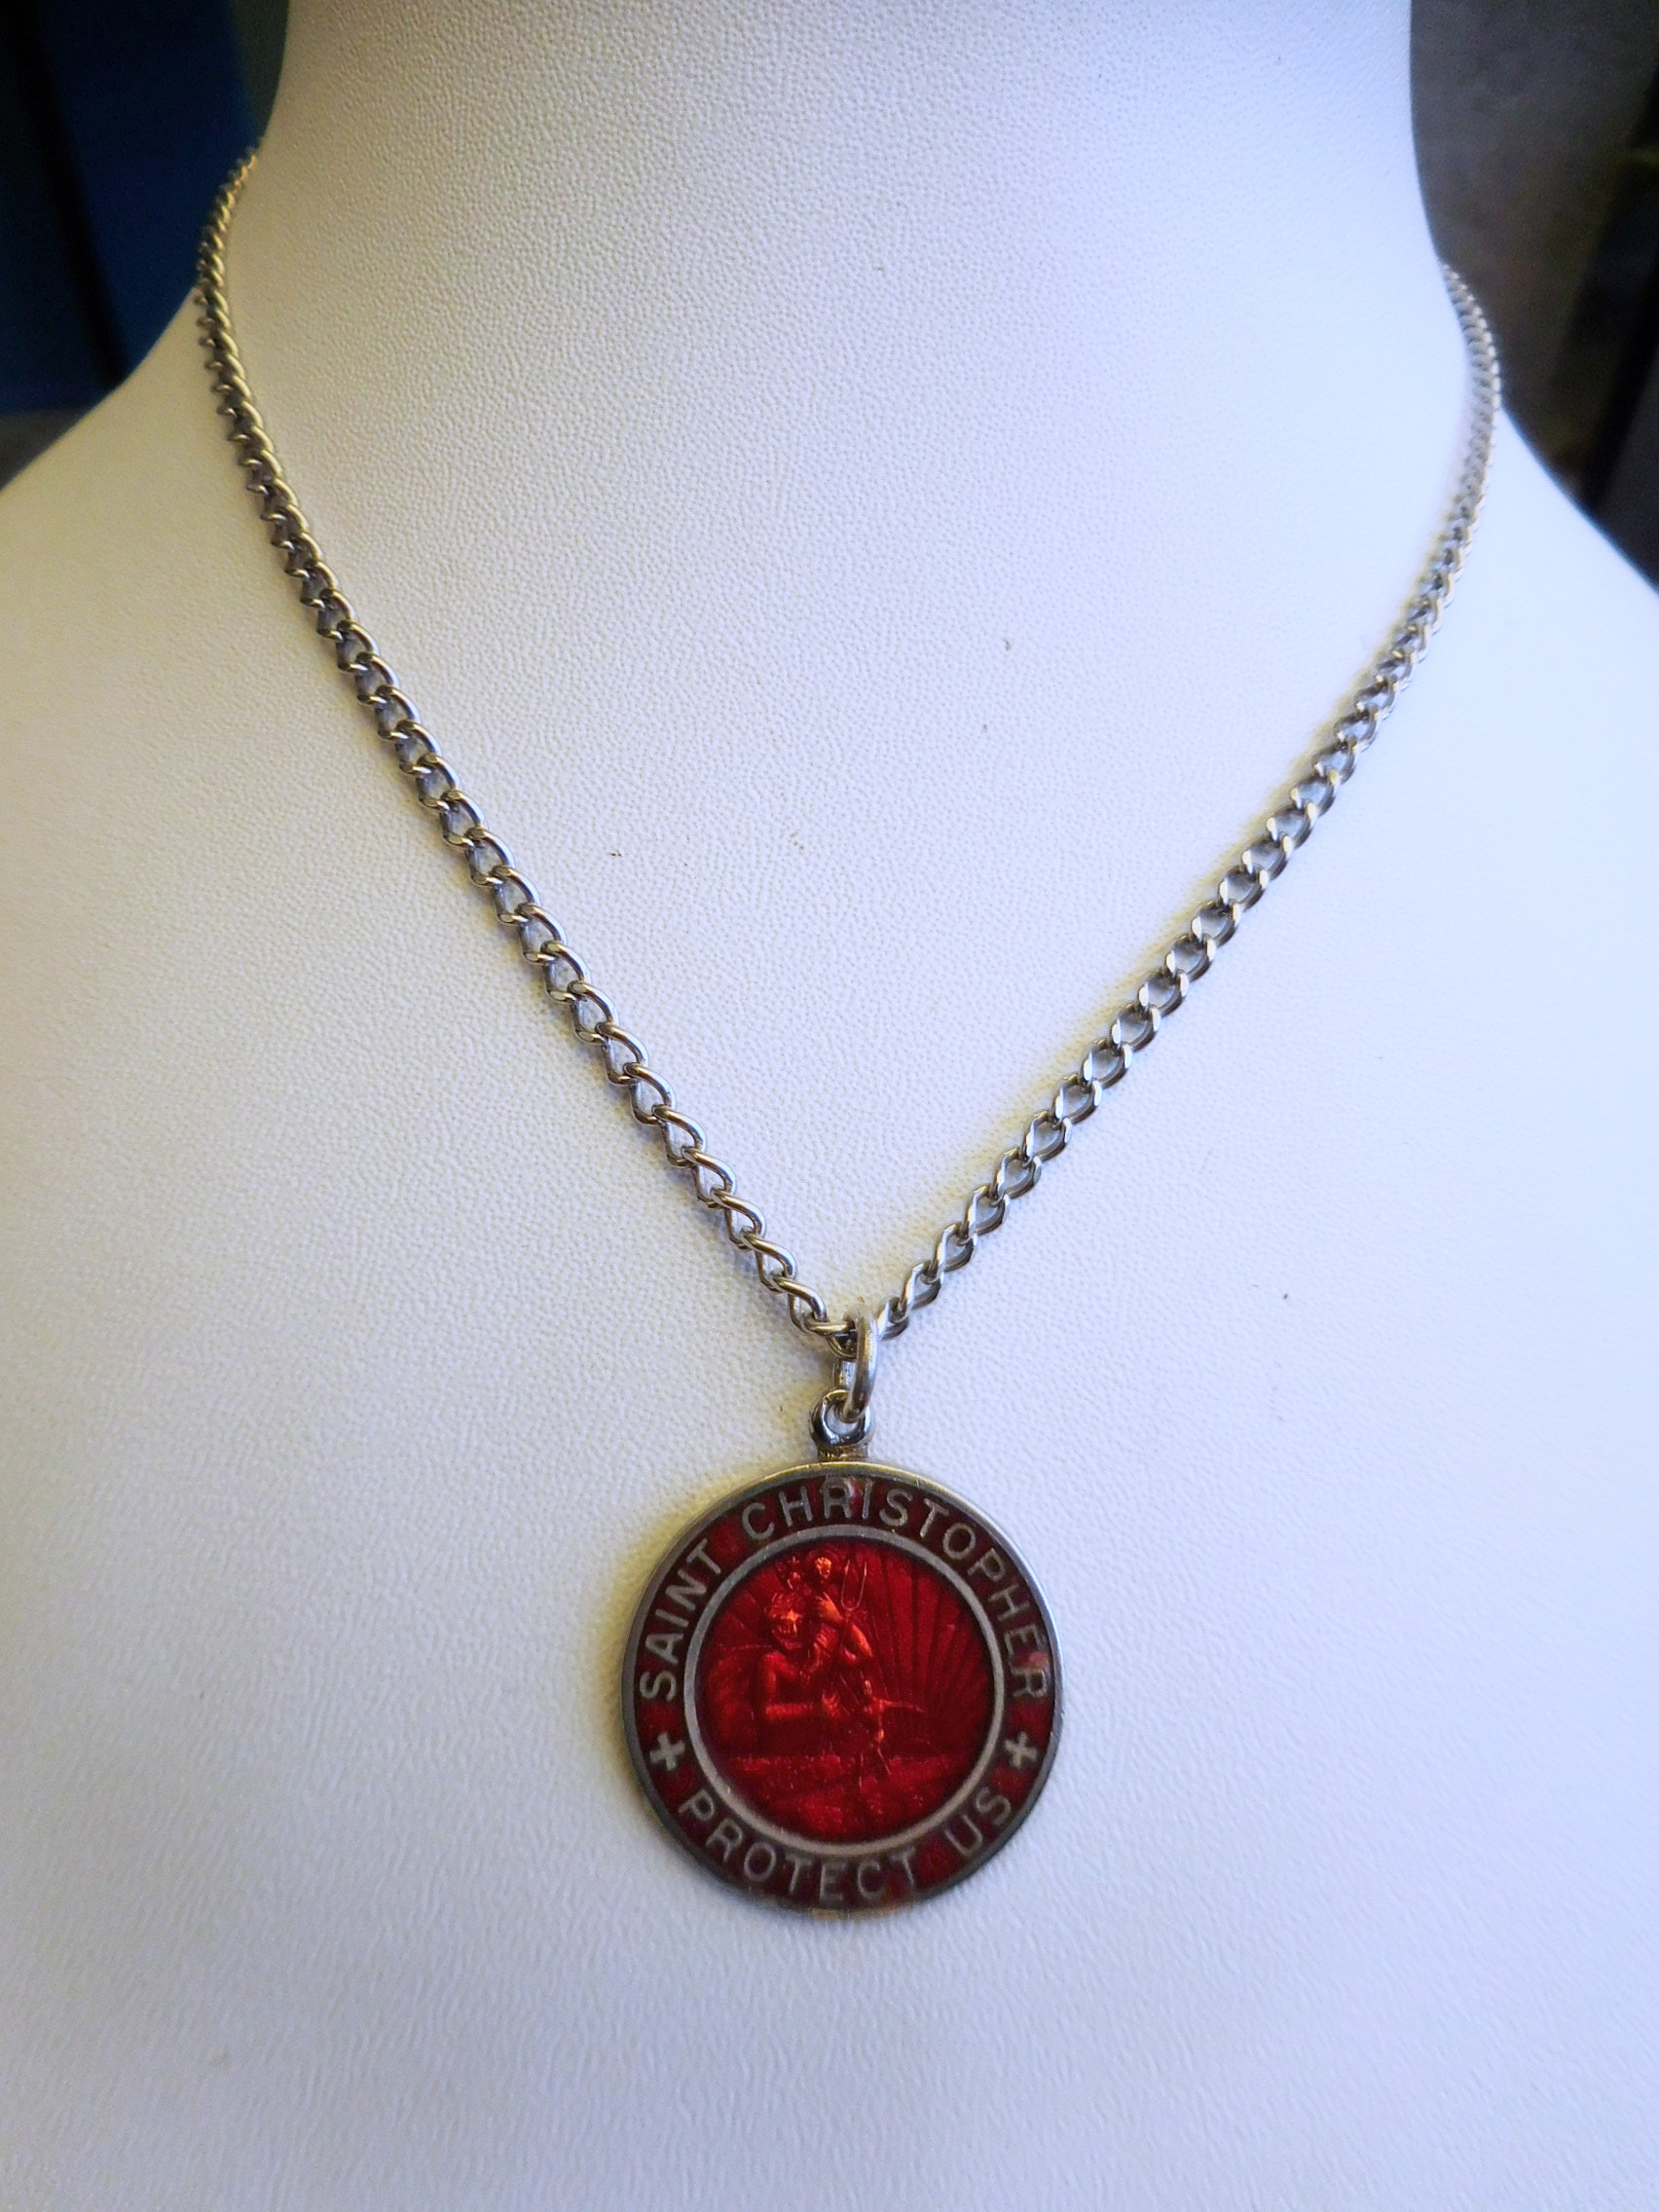 Vintage Saint Christopher Medal 1 1/4